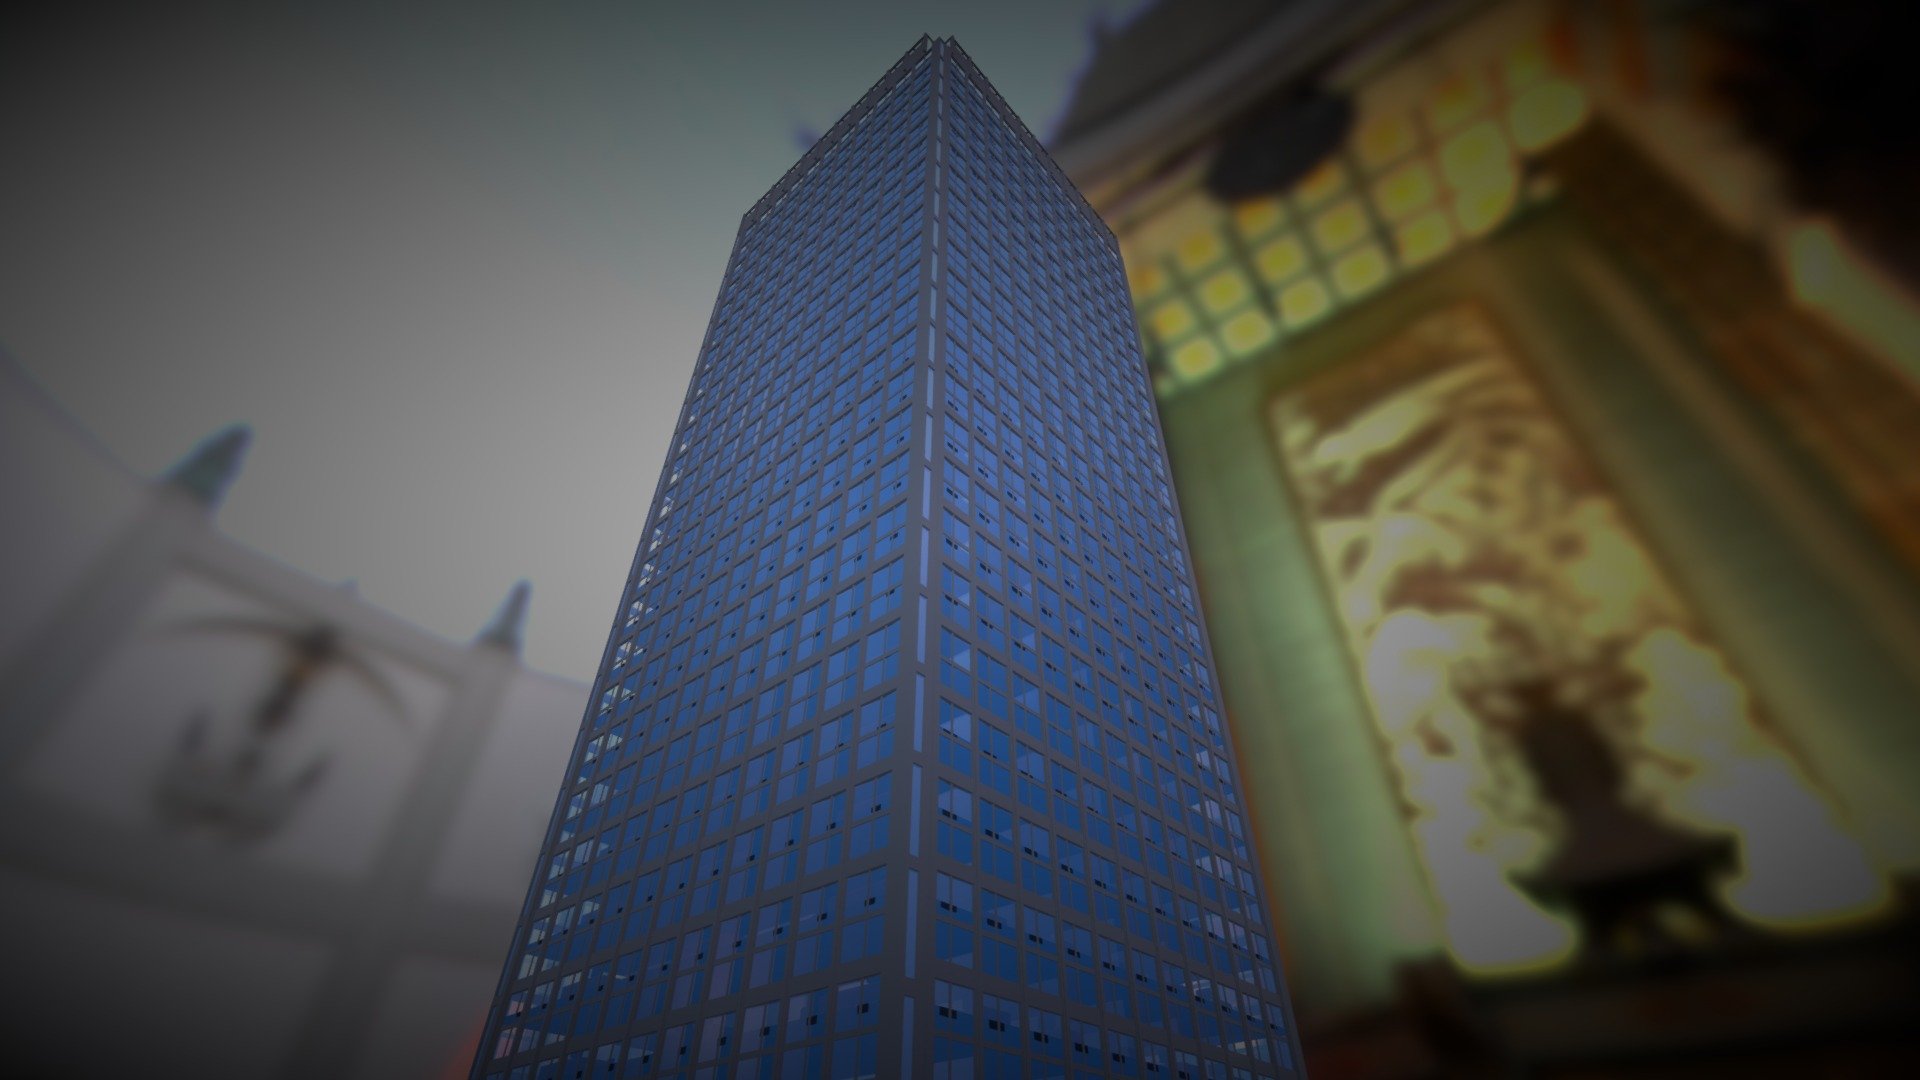 Just a skyscraper :D - Skyscraper - Download Free 3D model by druid_cz 3d model